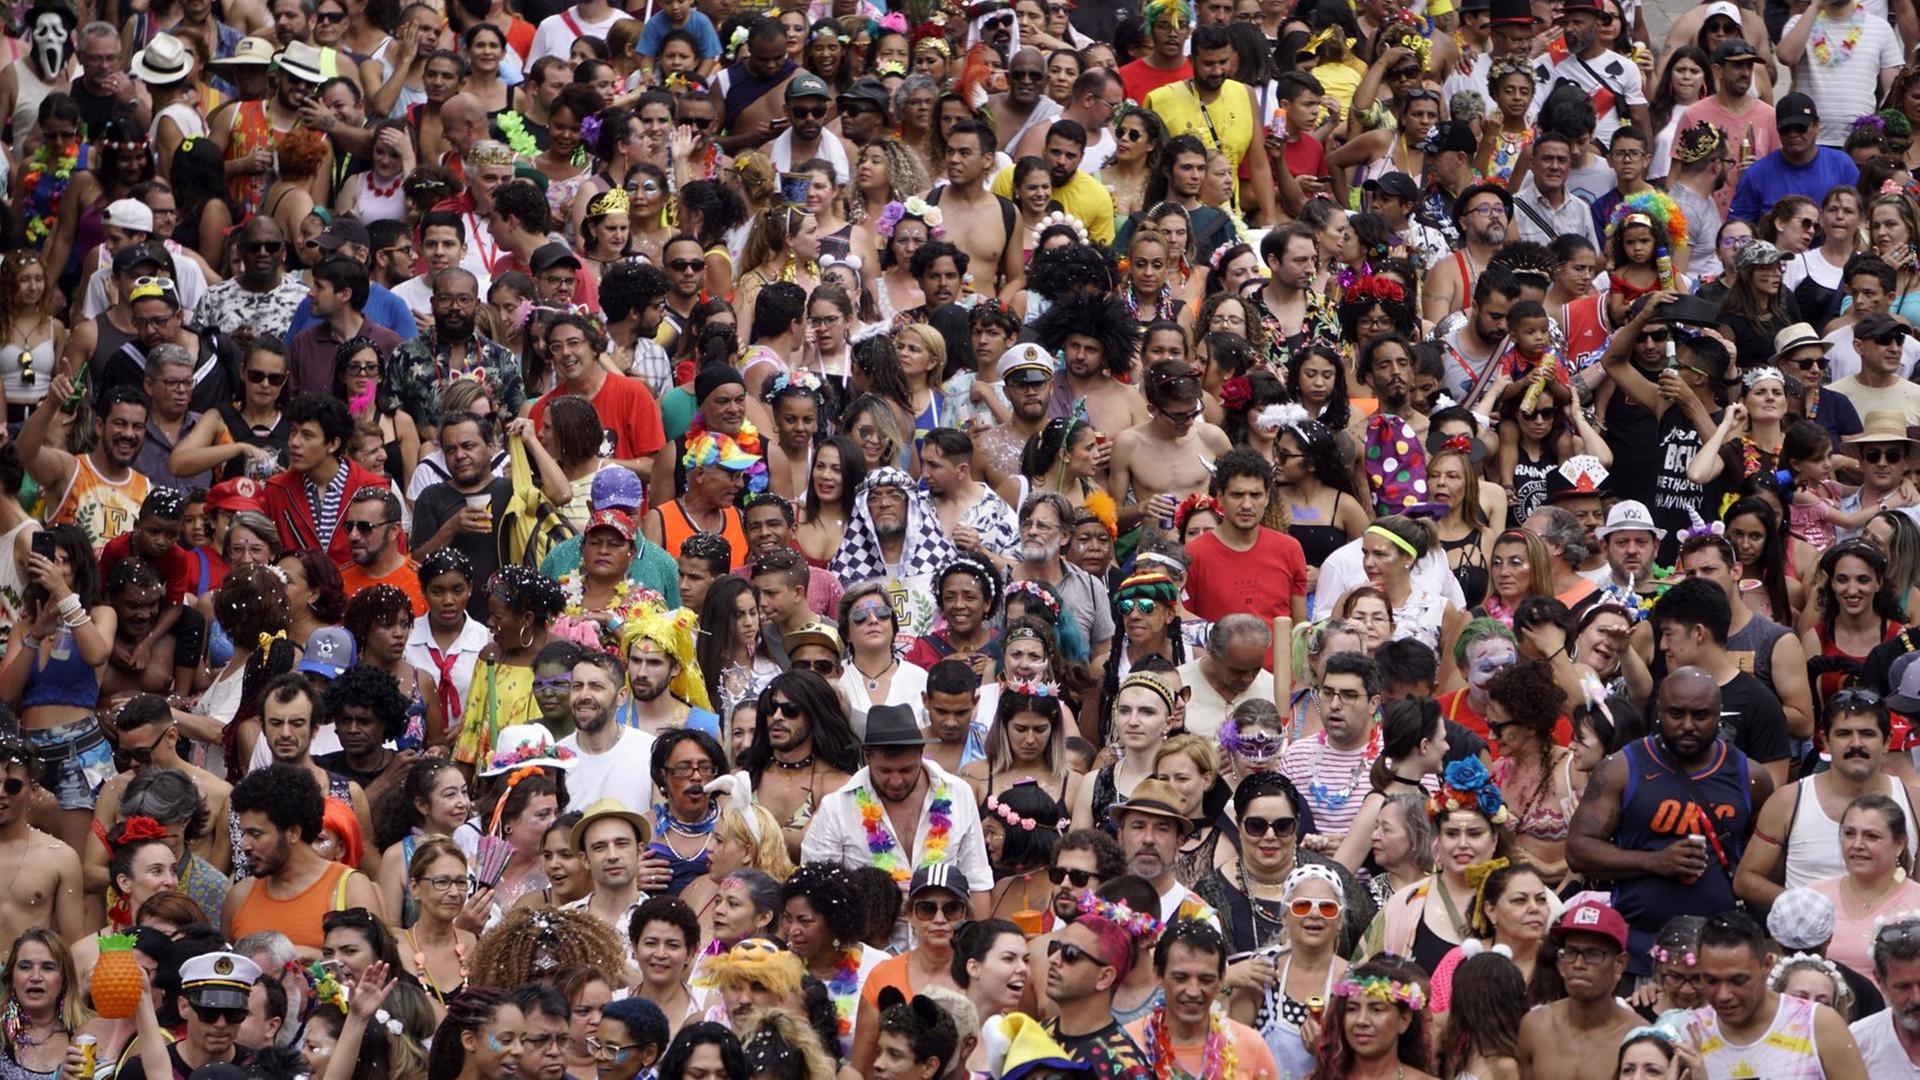 Tausende feiernde Menschen auf den Straßen von Sao Paulo